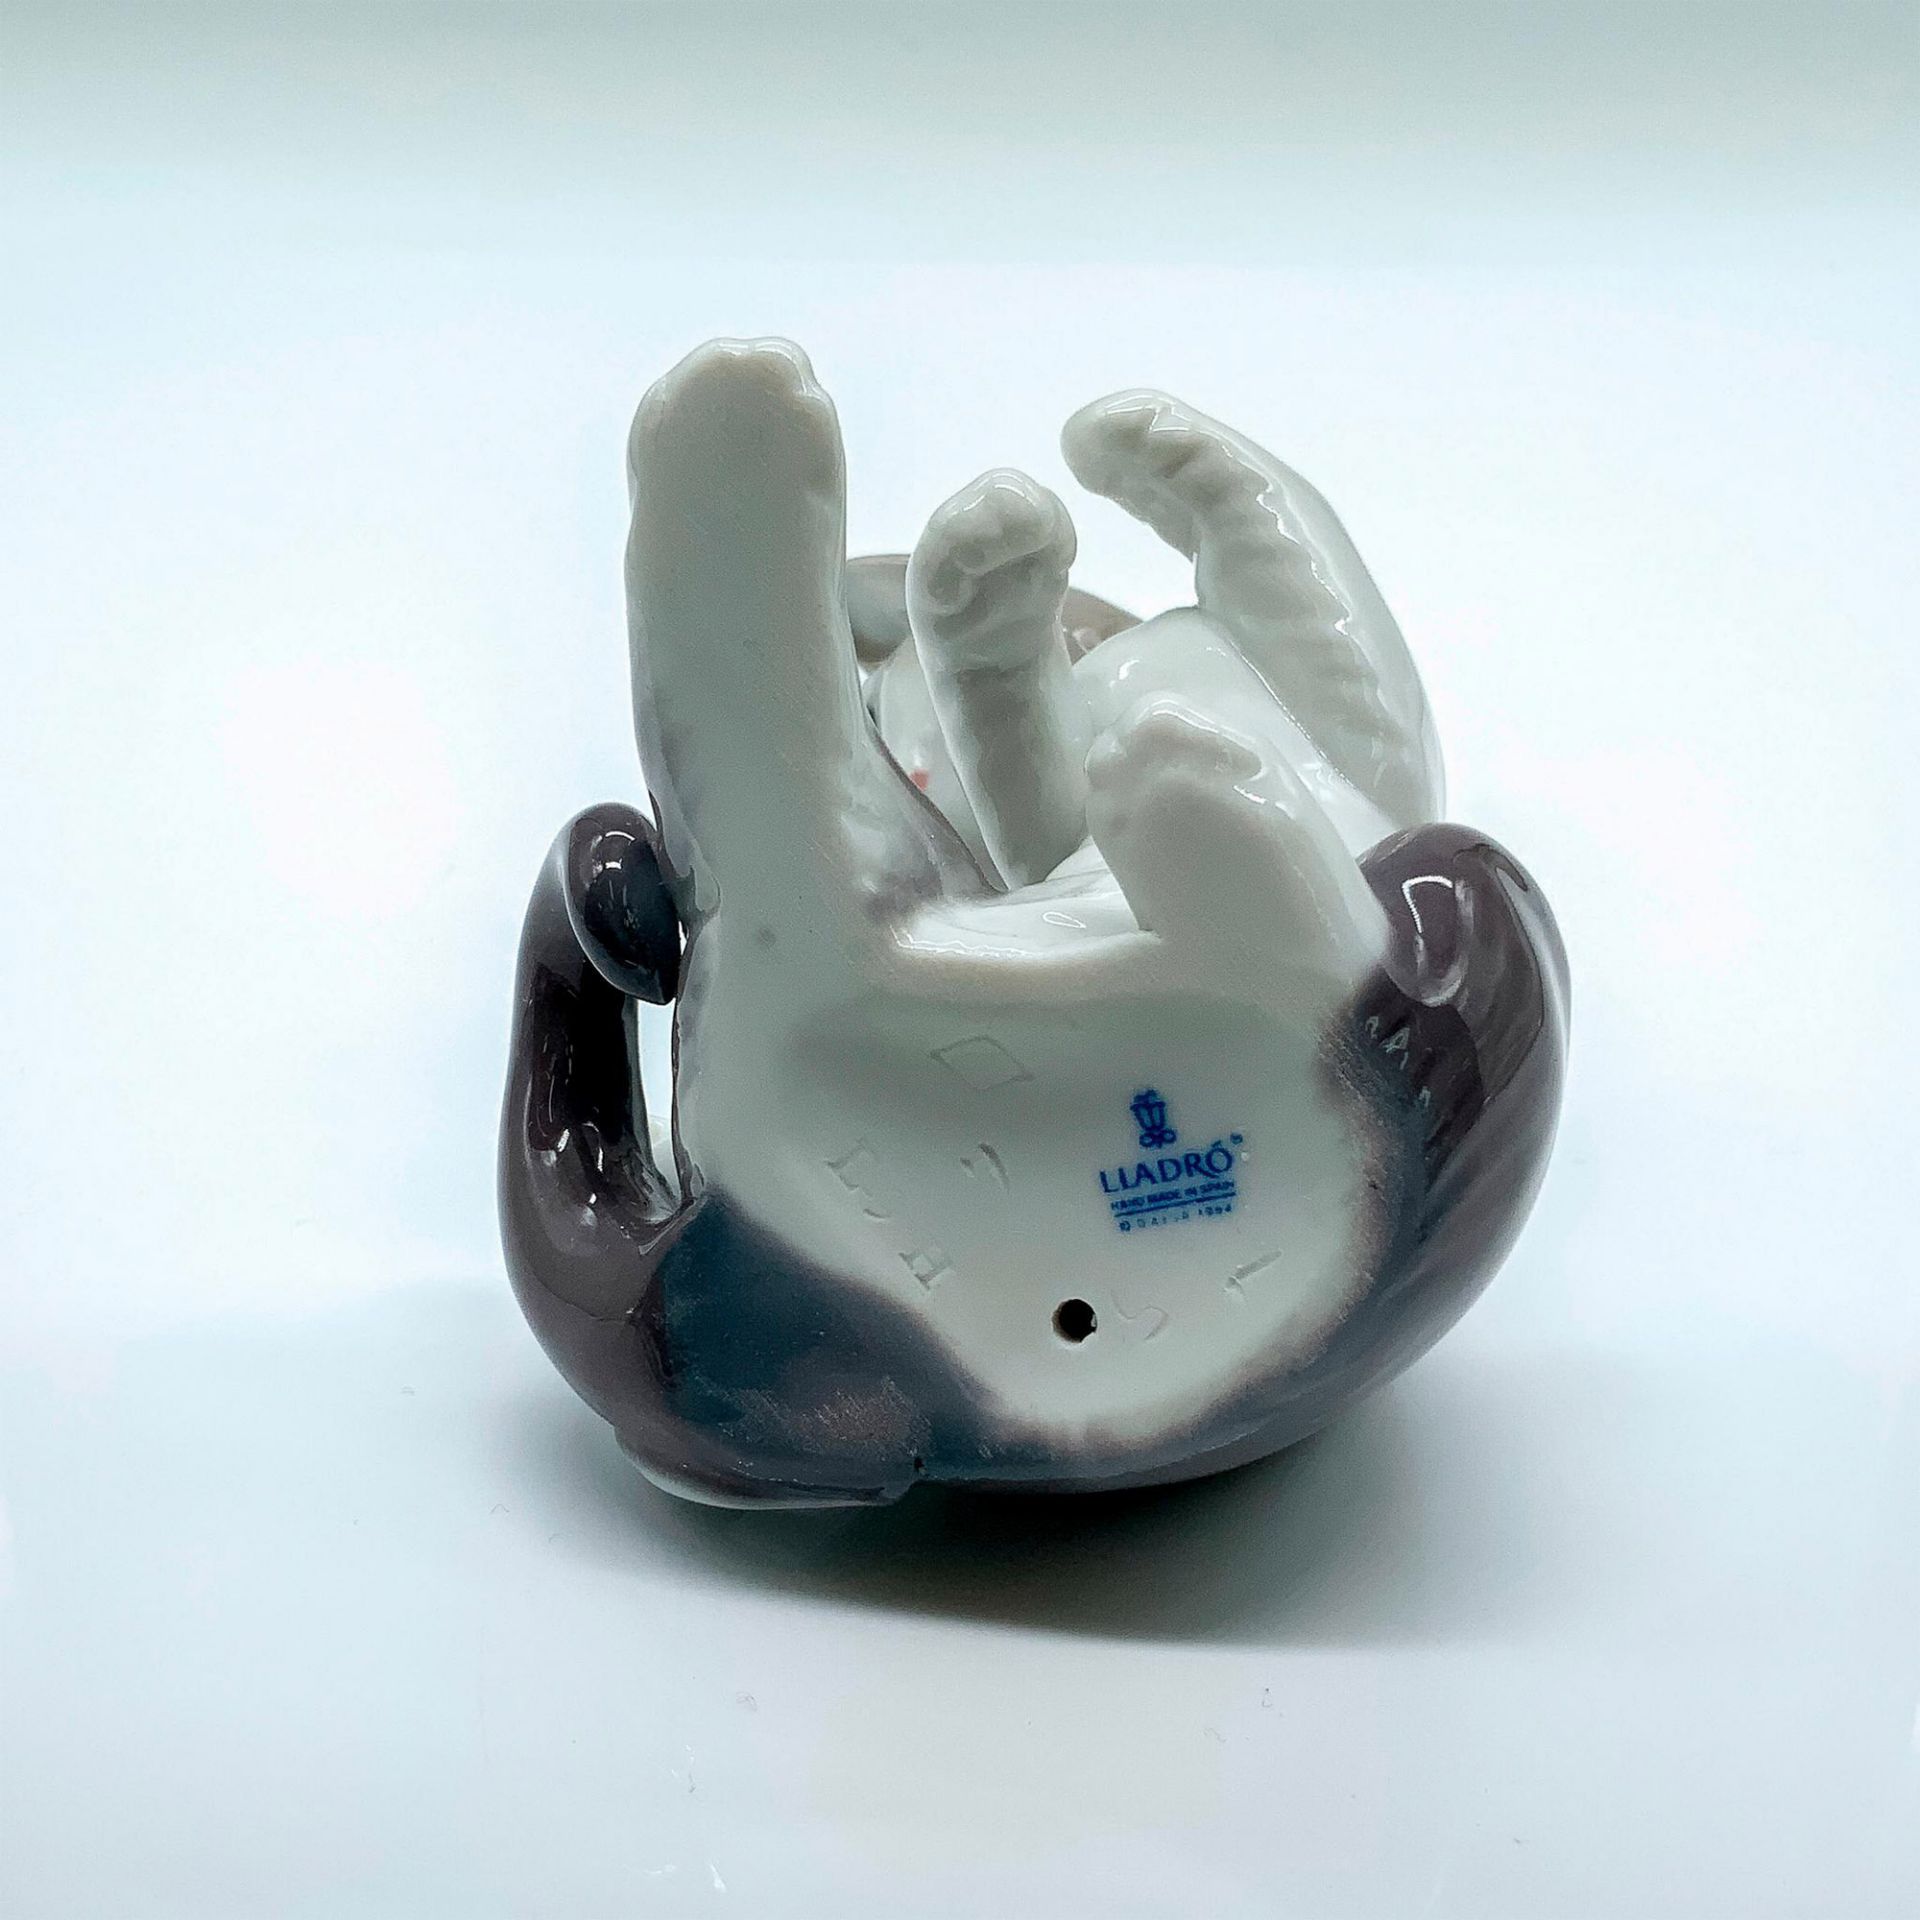 Cat and Mouse 1005236 - Lladro Porcelain Figurine - Bild 4 aus 4